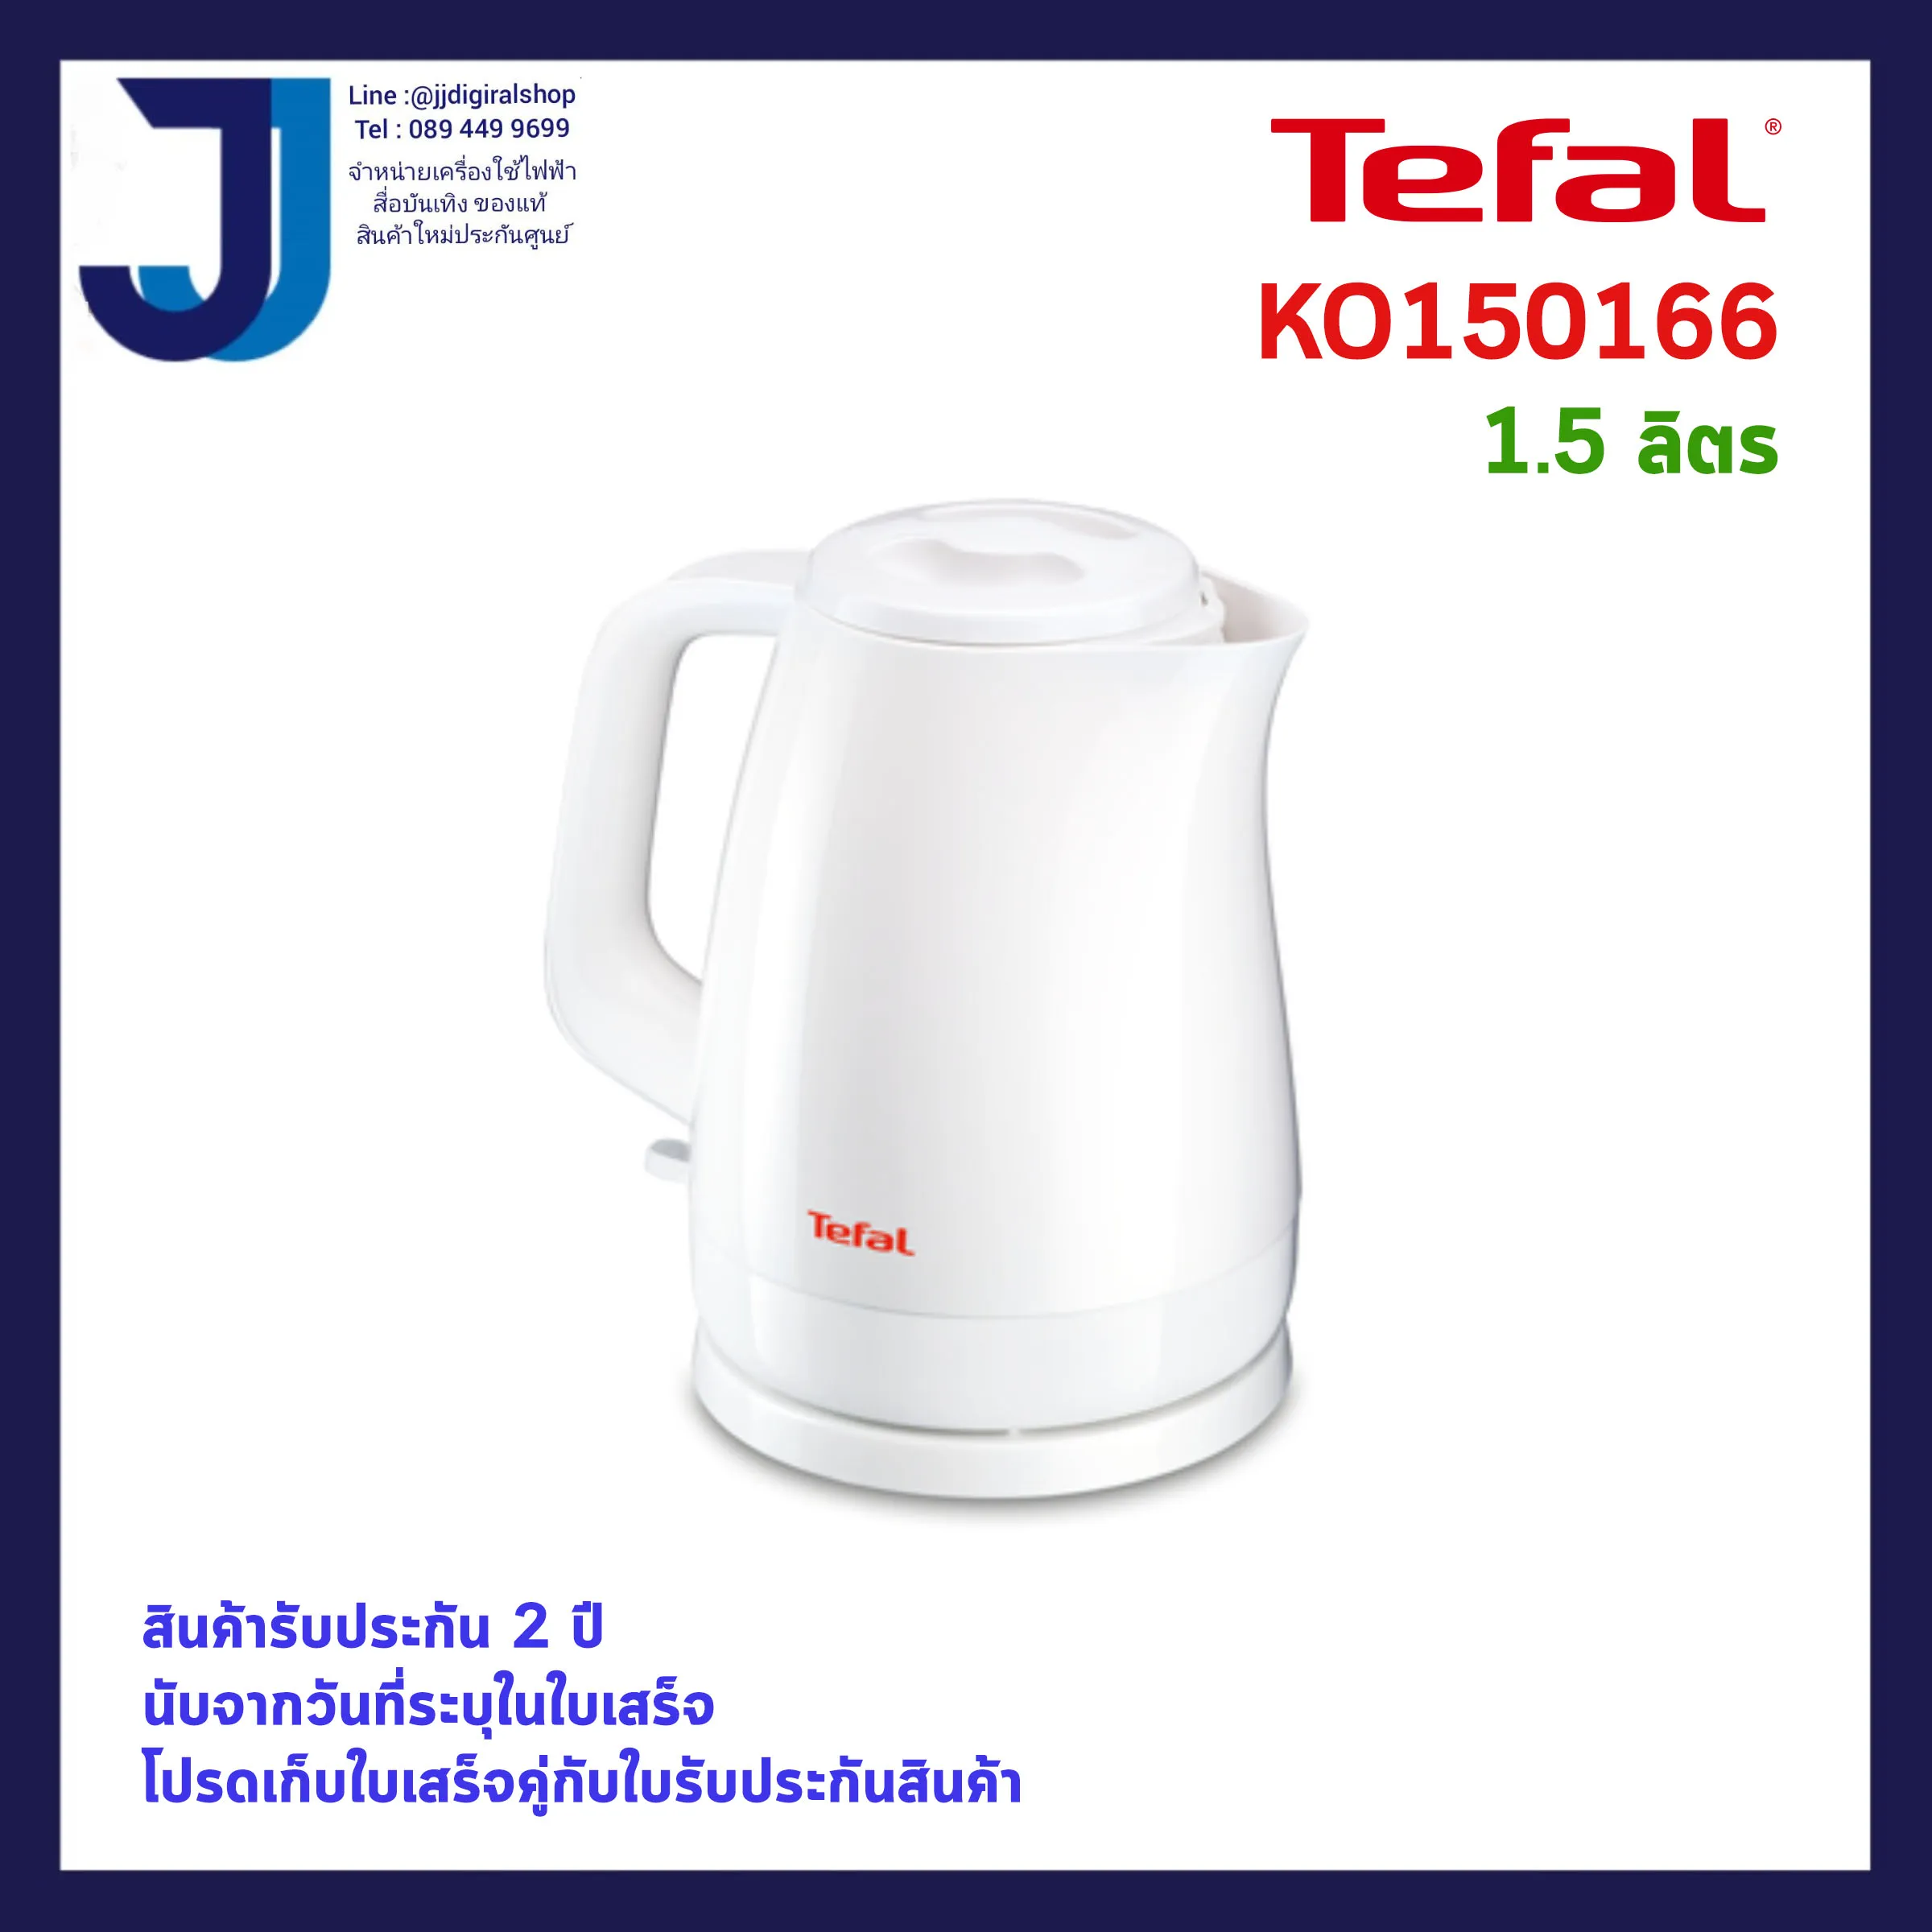 Tefal-กาต้มน้ำไฟฟ้า Tefal รุ่น KO150166